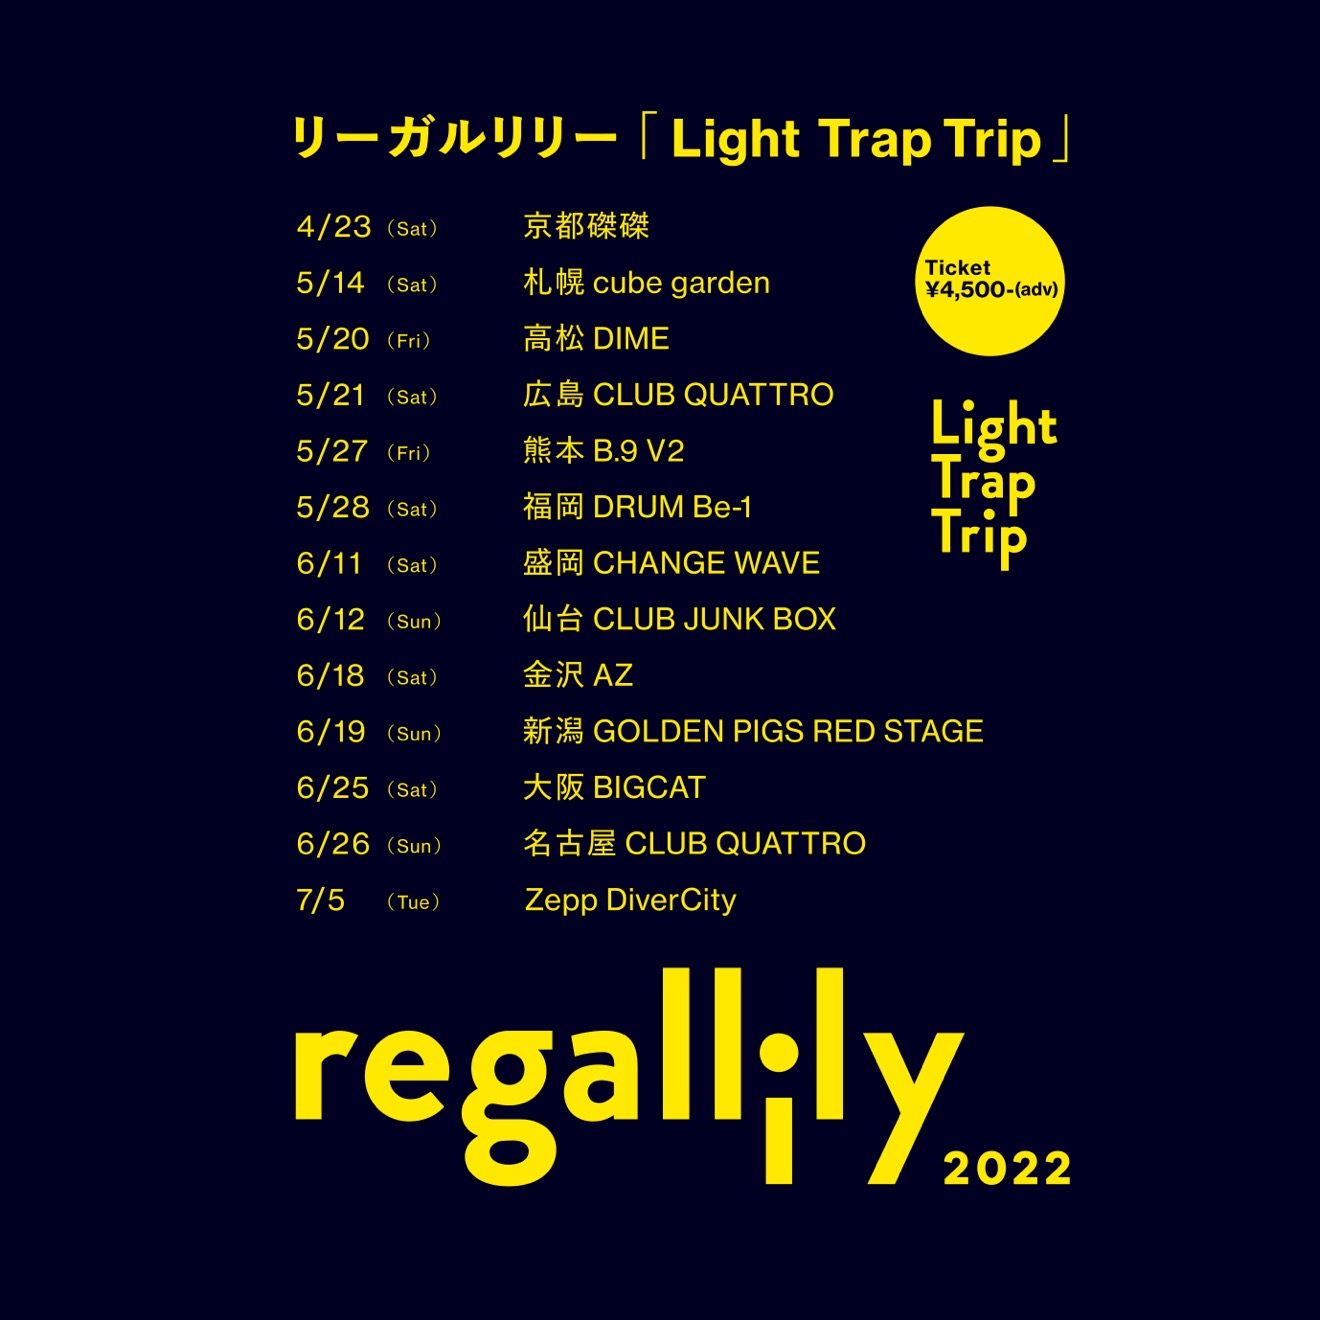 Regal Lily анонсировали концертный тур по 13 городам Японии